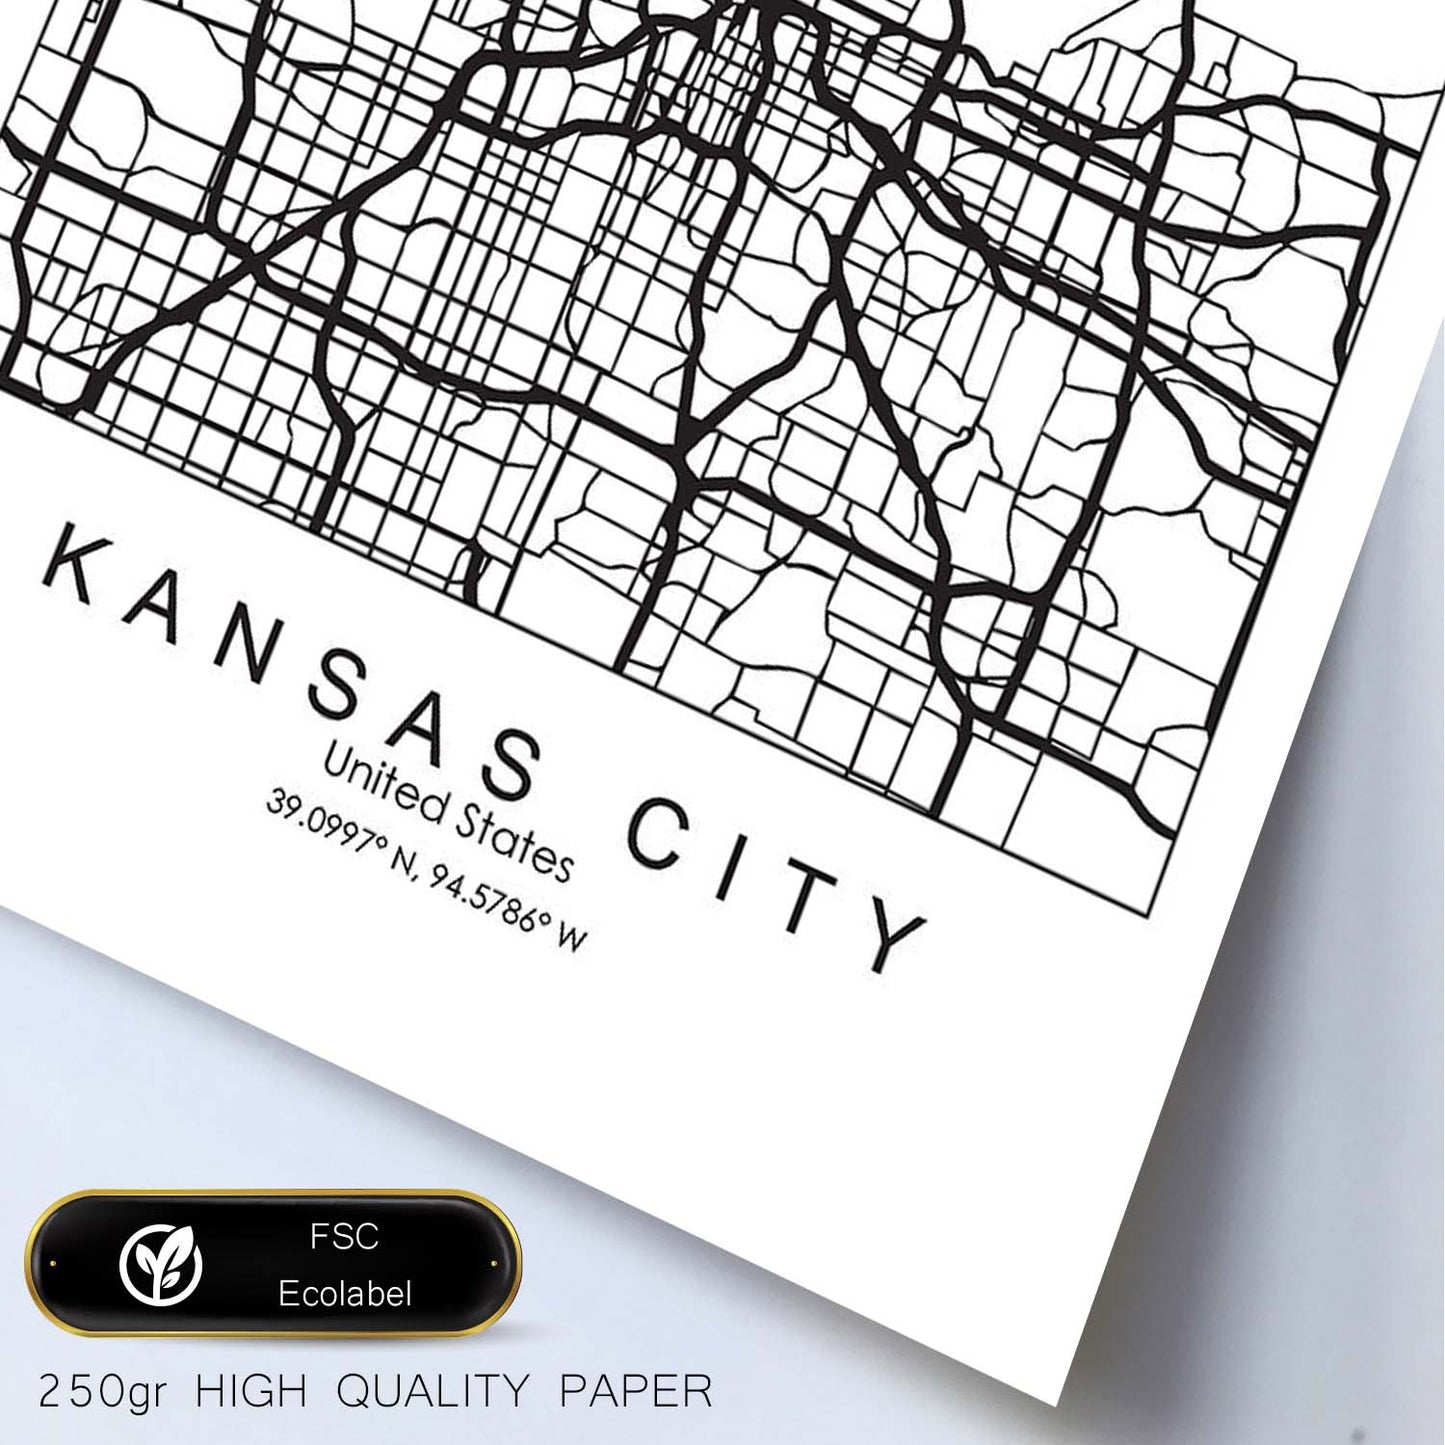 Poster con mapa de Kansas. Lámina de Estados Unidos, con imágenes de mapas y carreteras-Artwork-Nacnic-Nacnic Estudio SL